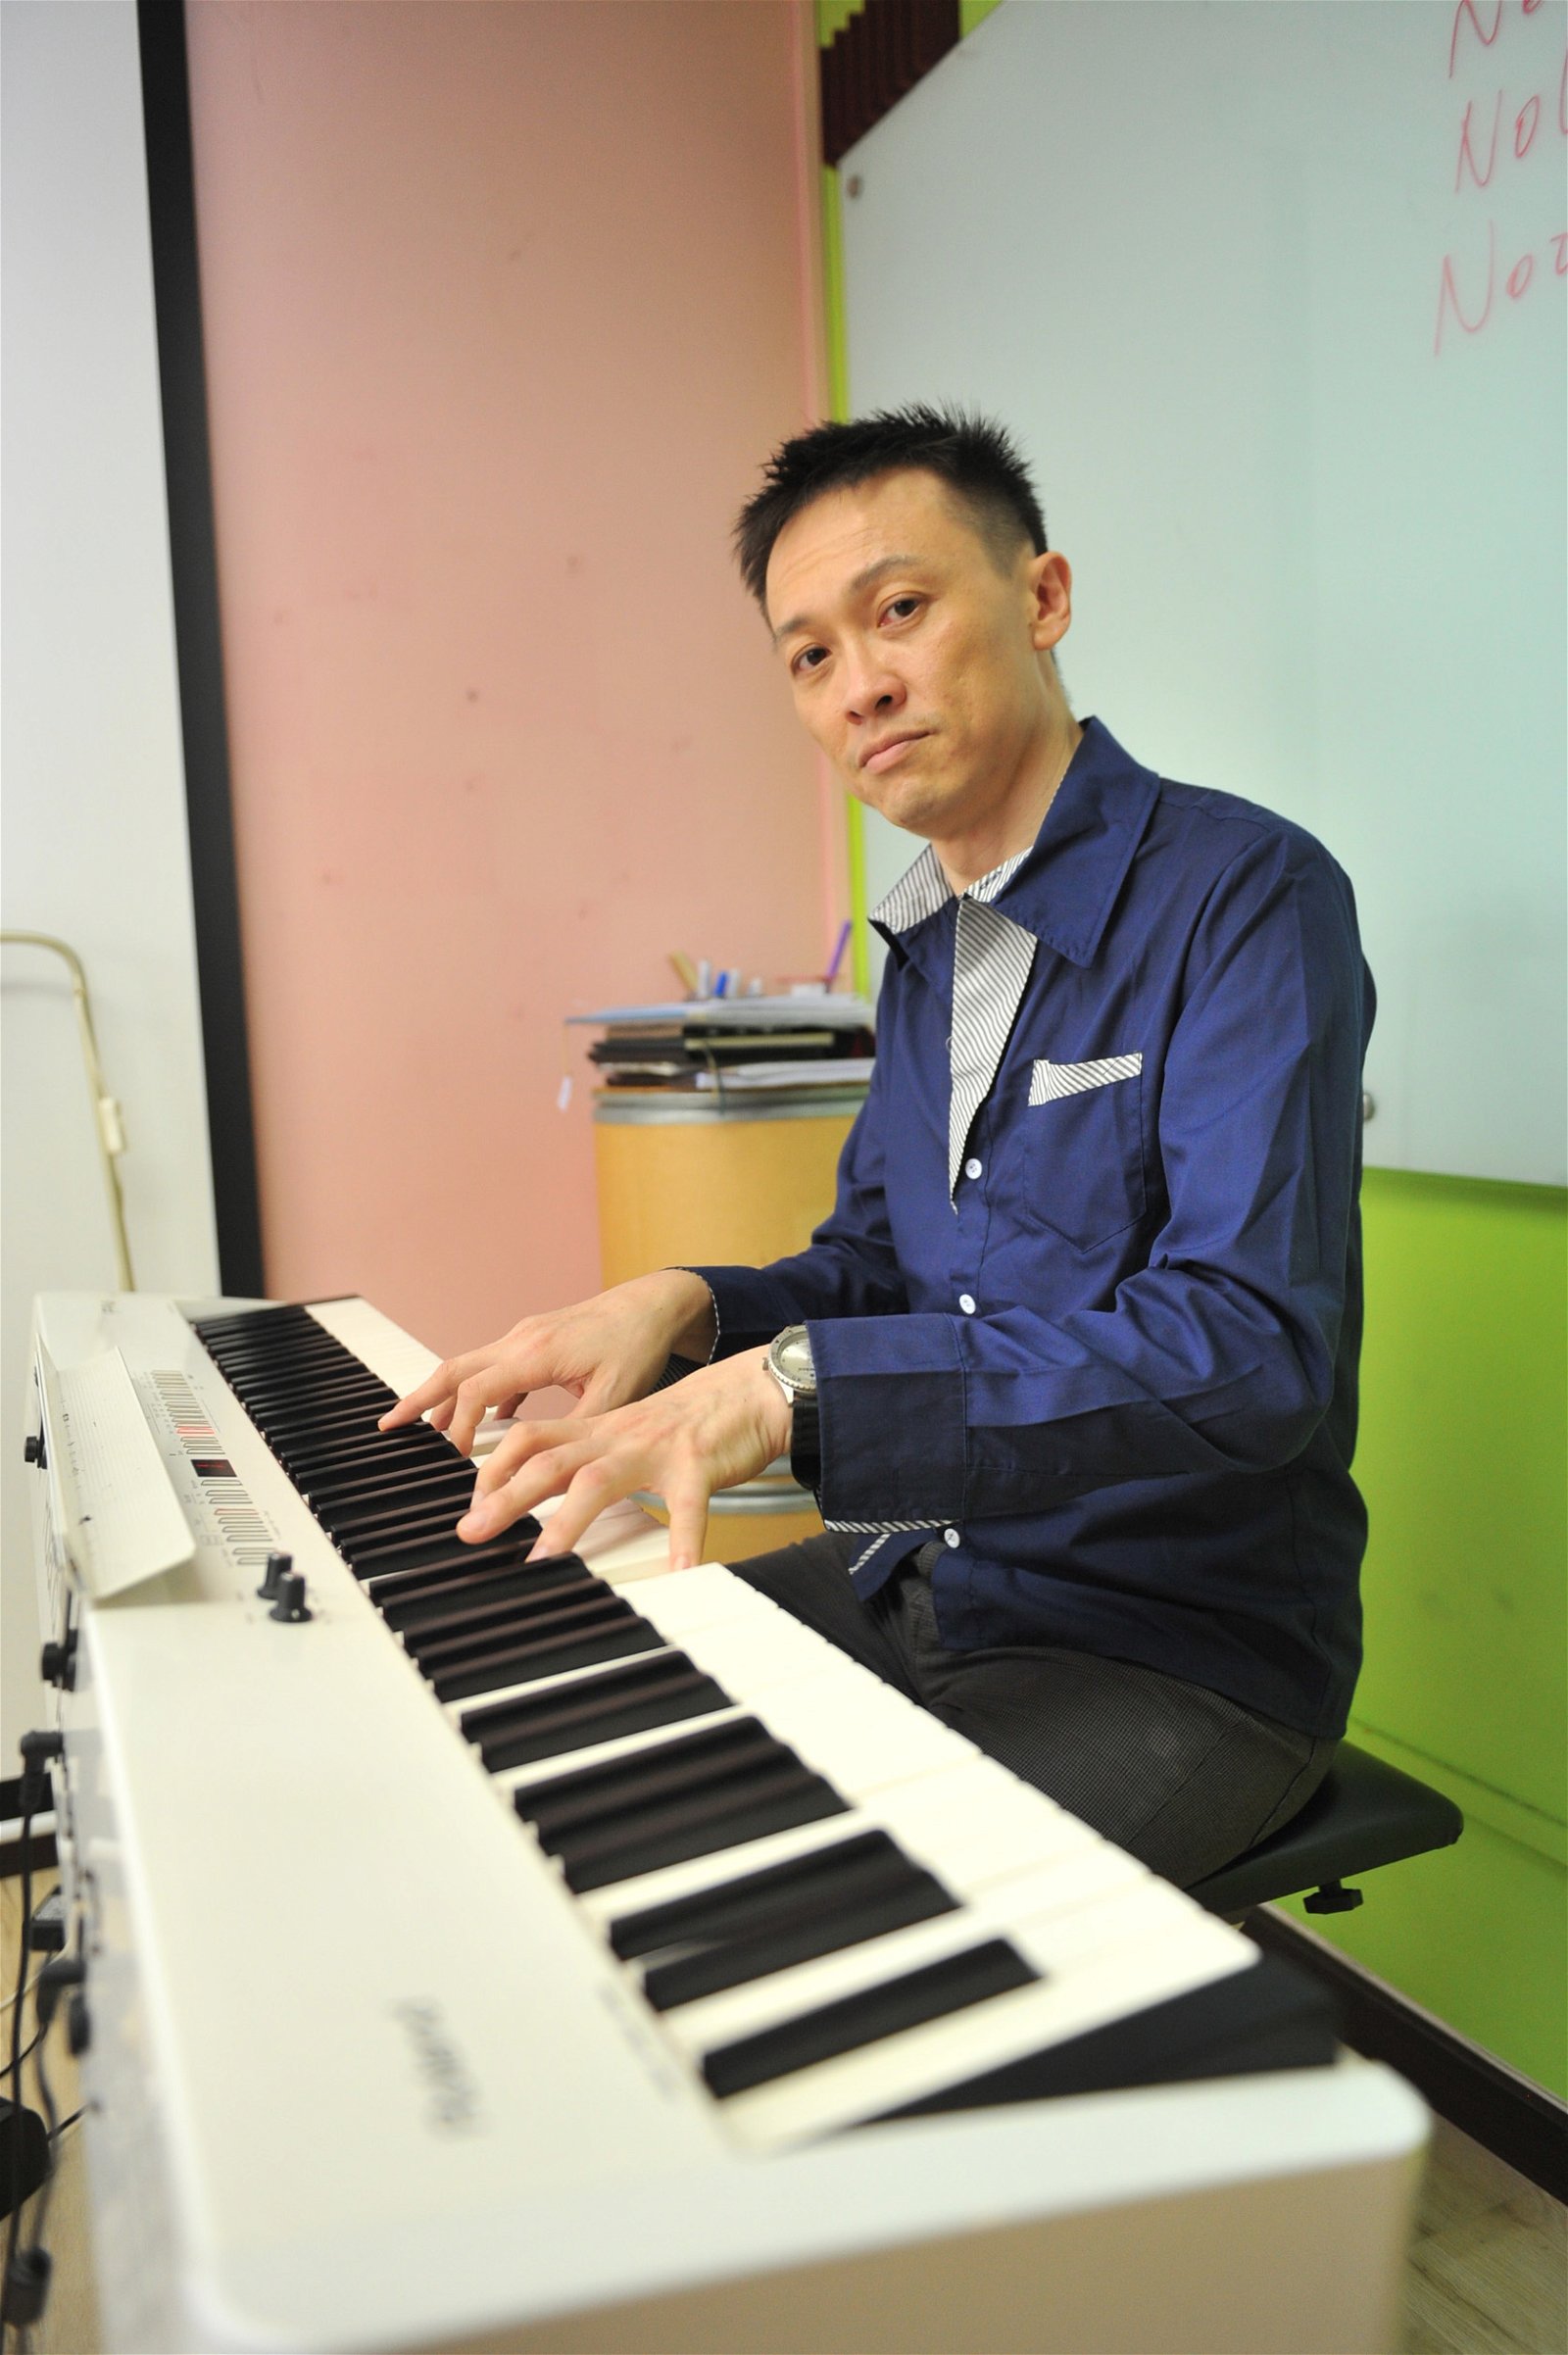 周靖顺目前是声乐导师、合唱导师，常受邀到不同团体、 学校给予声乐、合唱指导与训练，不遗余力推广合唱艺术。（摄影：陈为康）